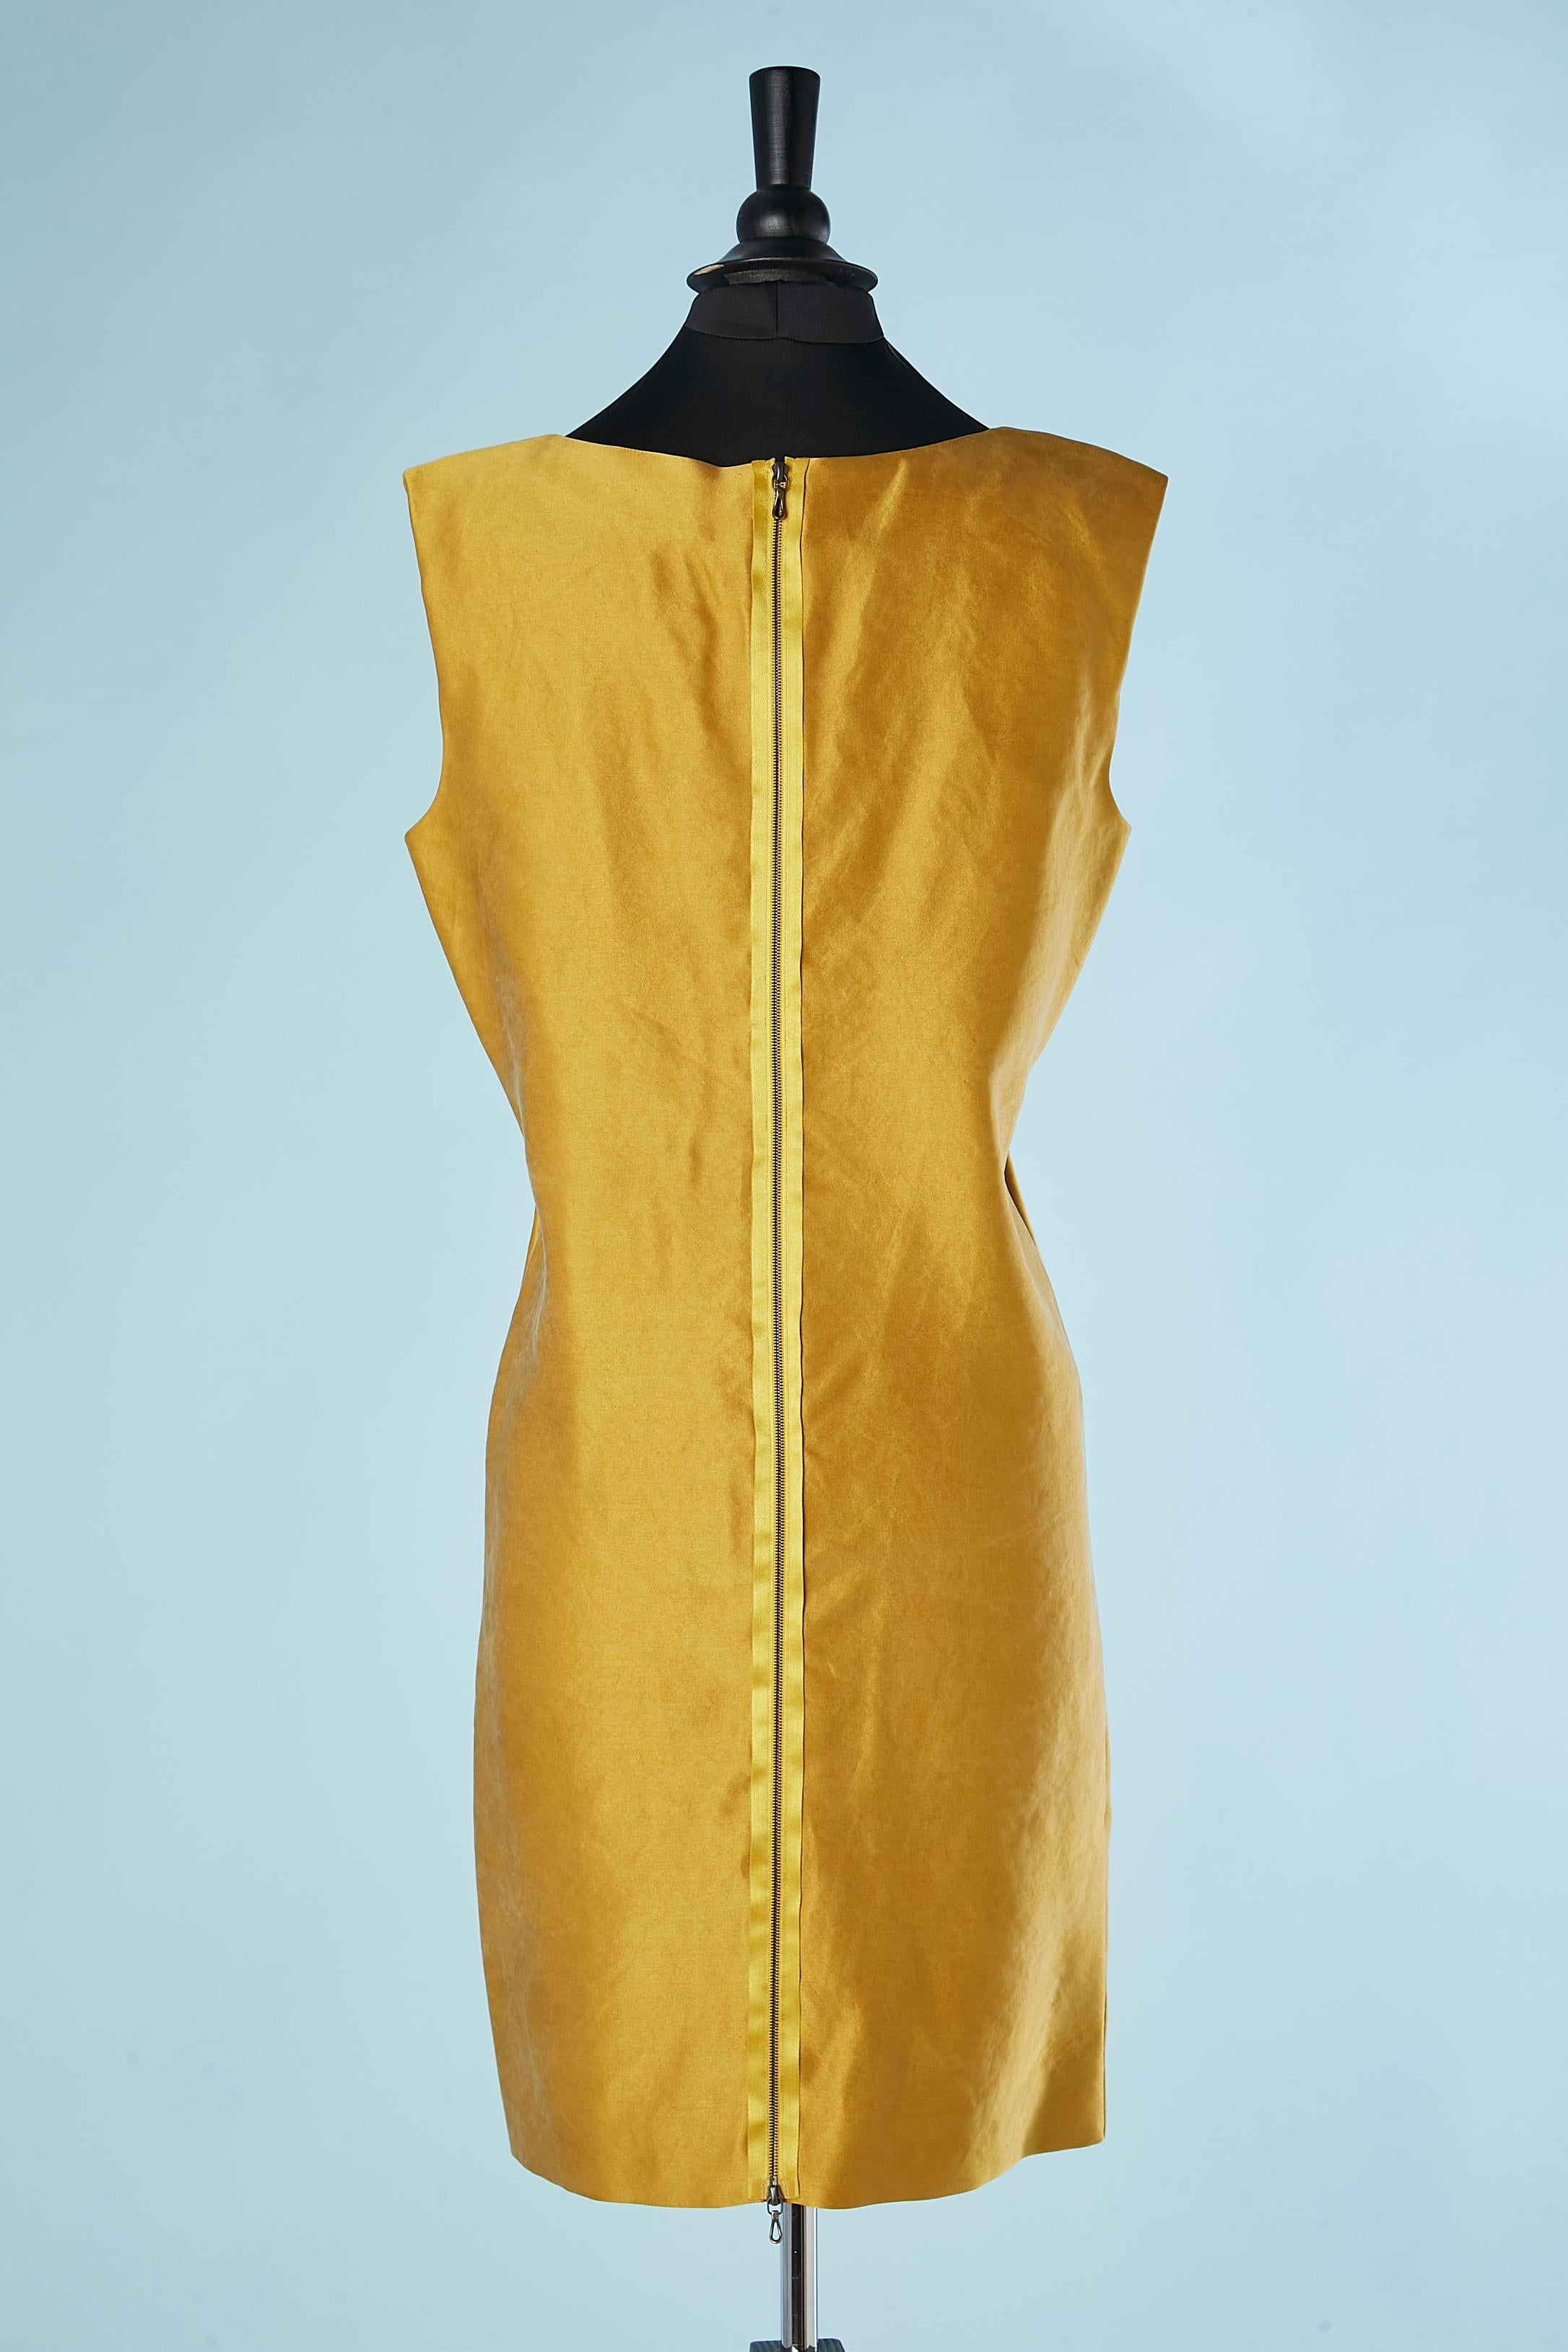 Women's Yellow silk sleeveless drape cocktail dress Lanvin par Alber Elbaz 